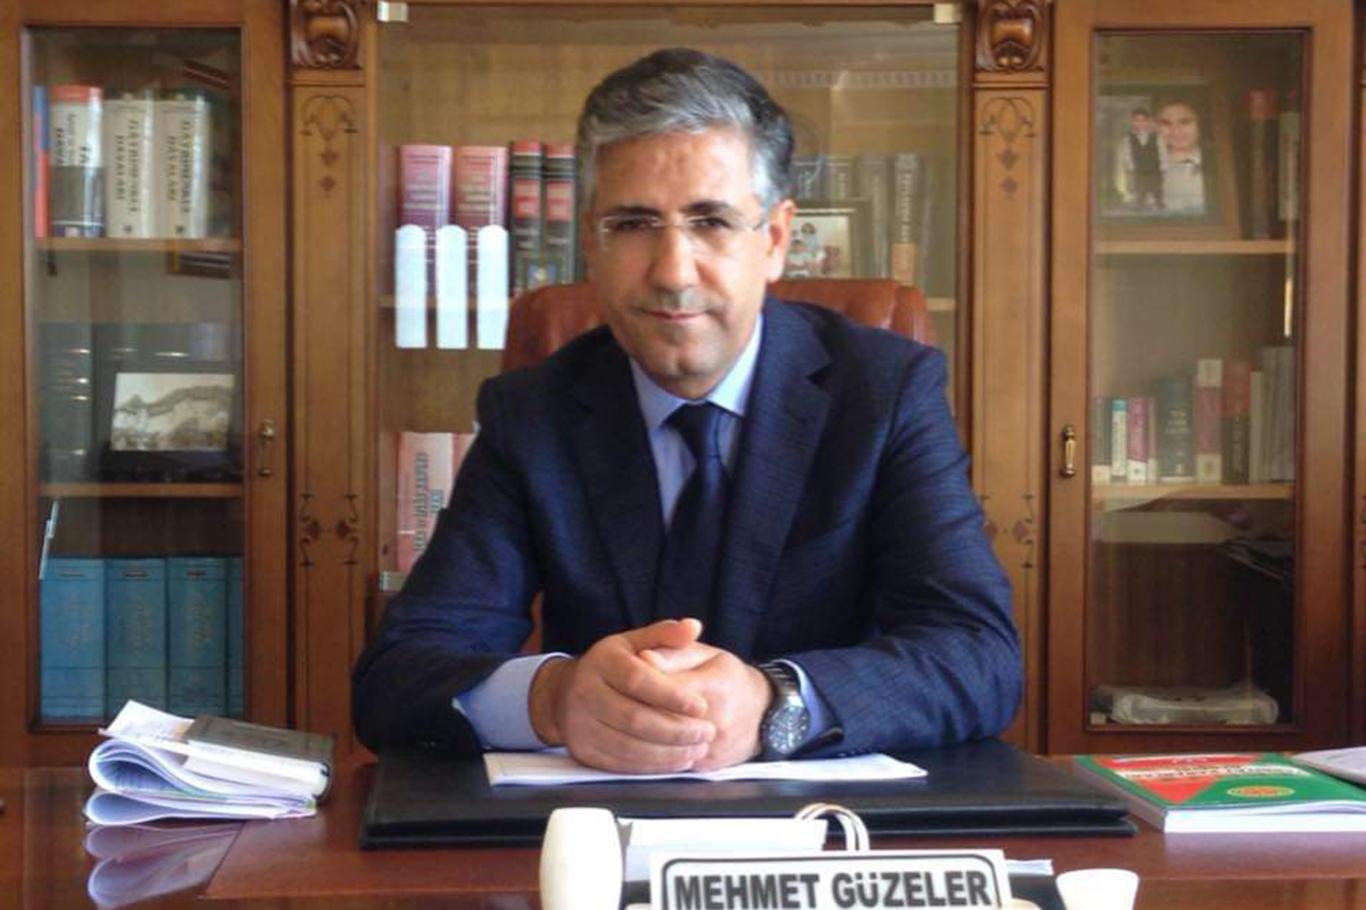 Avukat Güzeler: "Siyasi suçlarda indirim yapılmaması adalet duygusunu zayıflatacaktır"